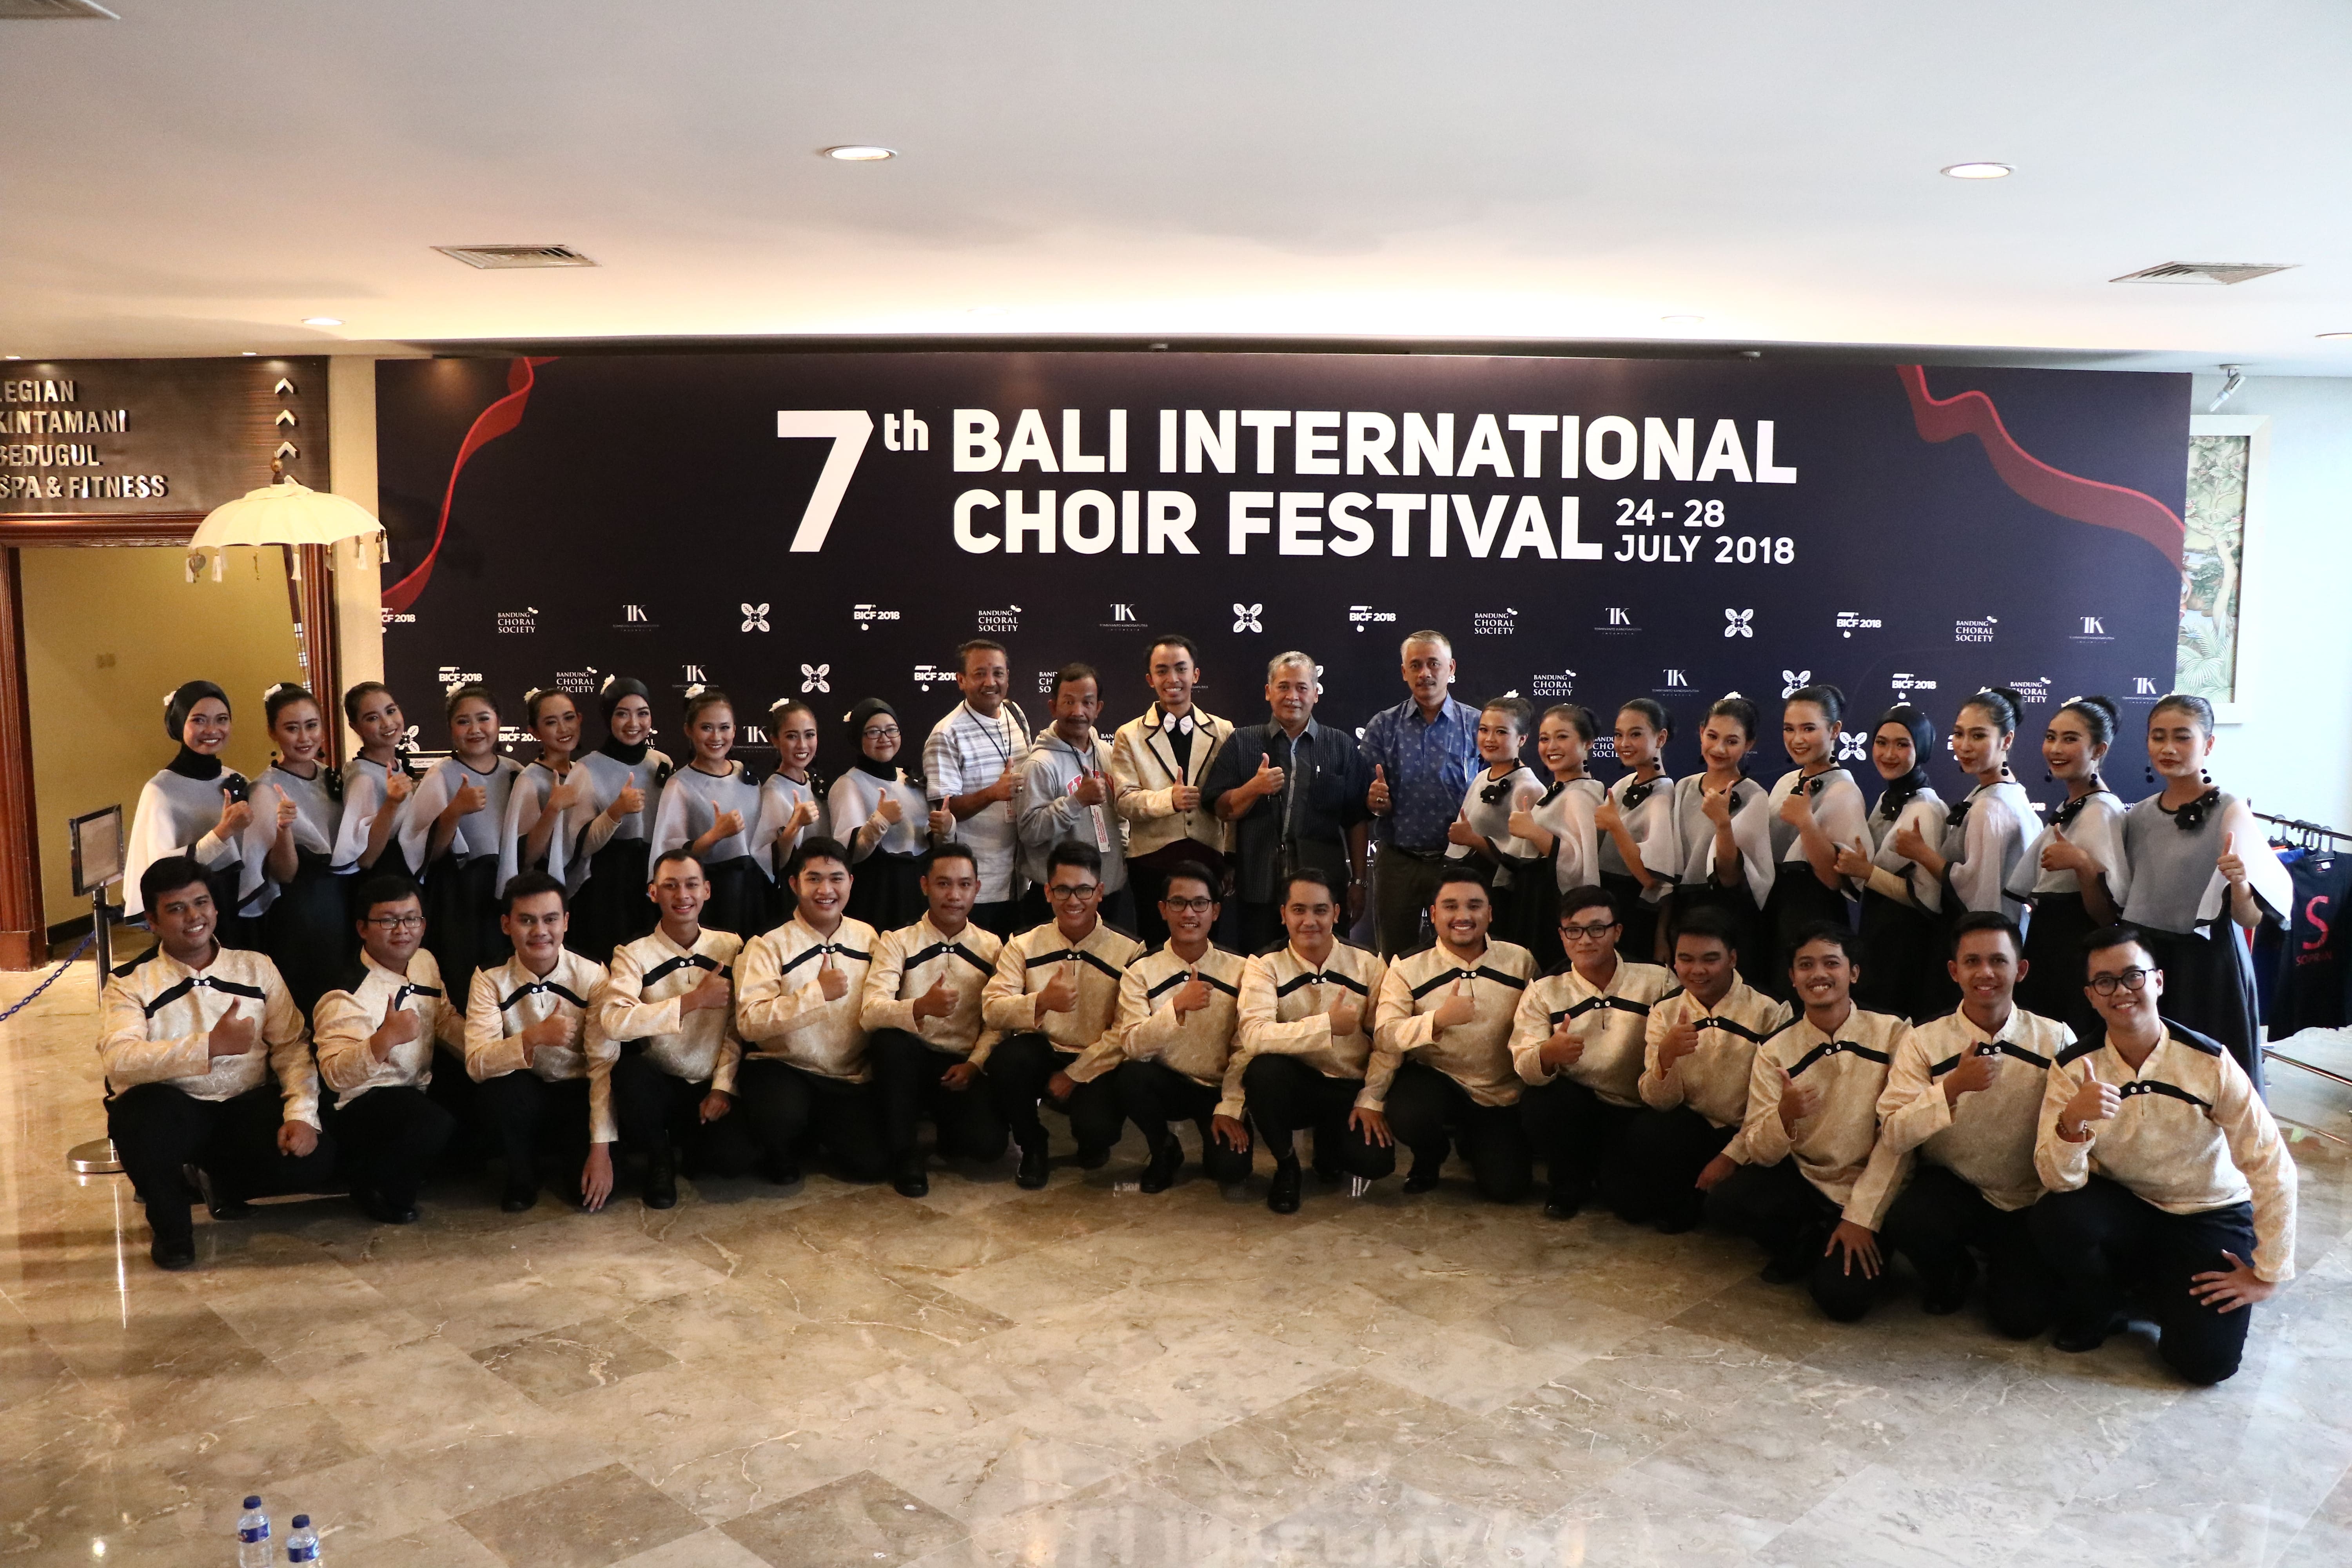 Foto 7th Bali International Choir Festival